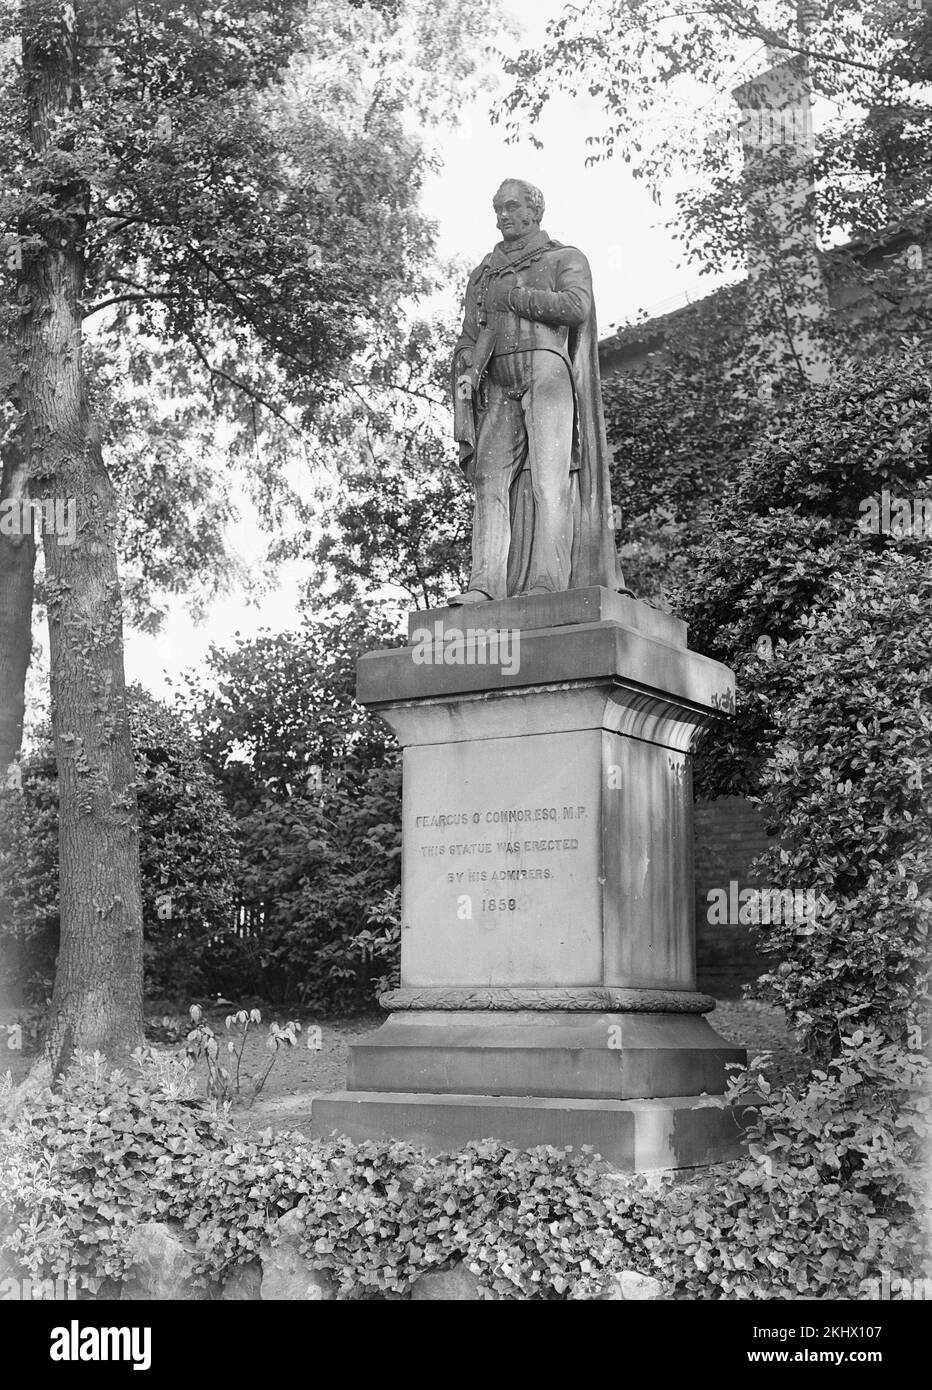 Fotografía en blanco y negro de la época victoriana que muestra la estatua del artista Feargus O'Connor en Nottingham Arboretum. Foto de stock